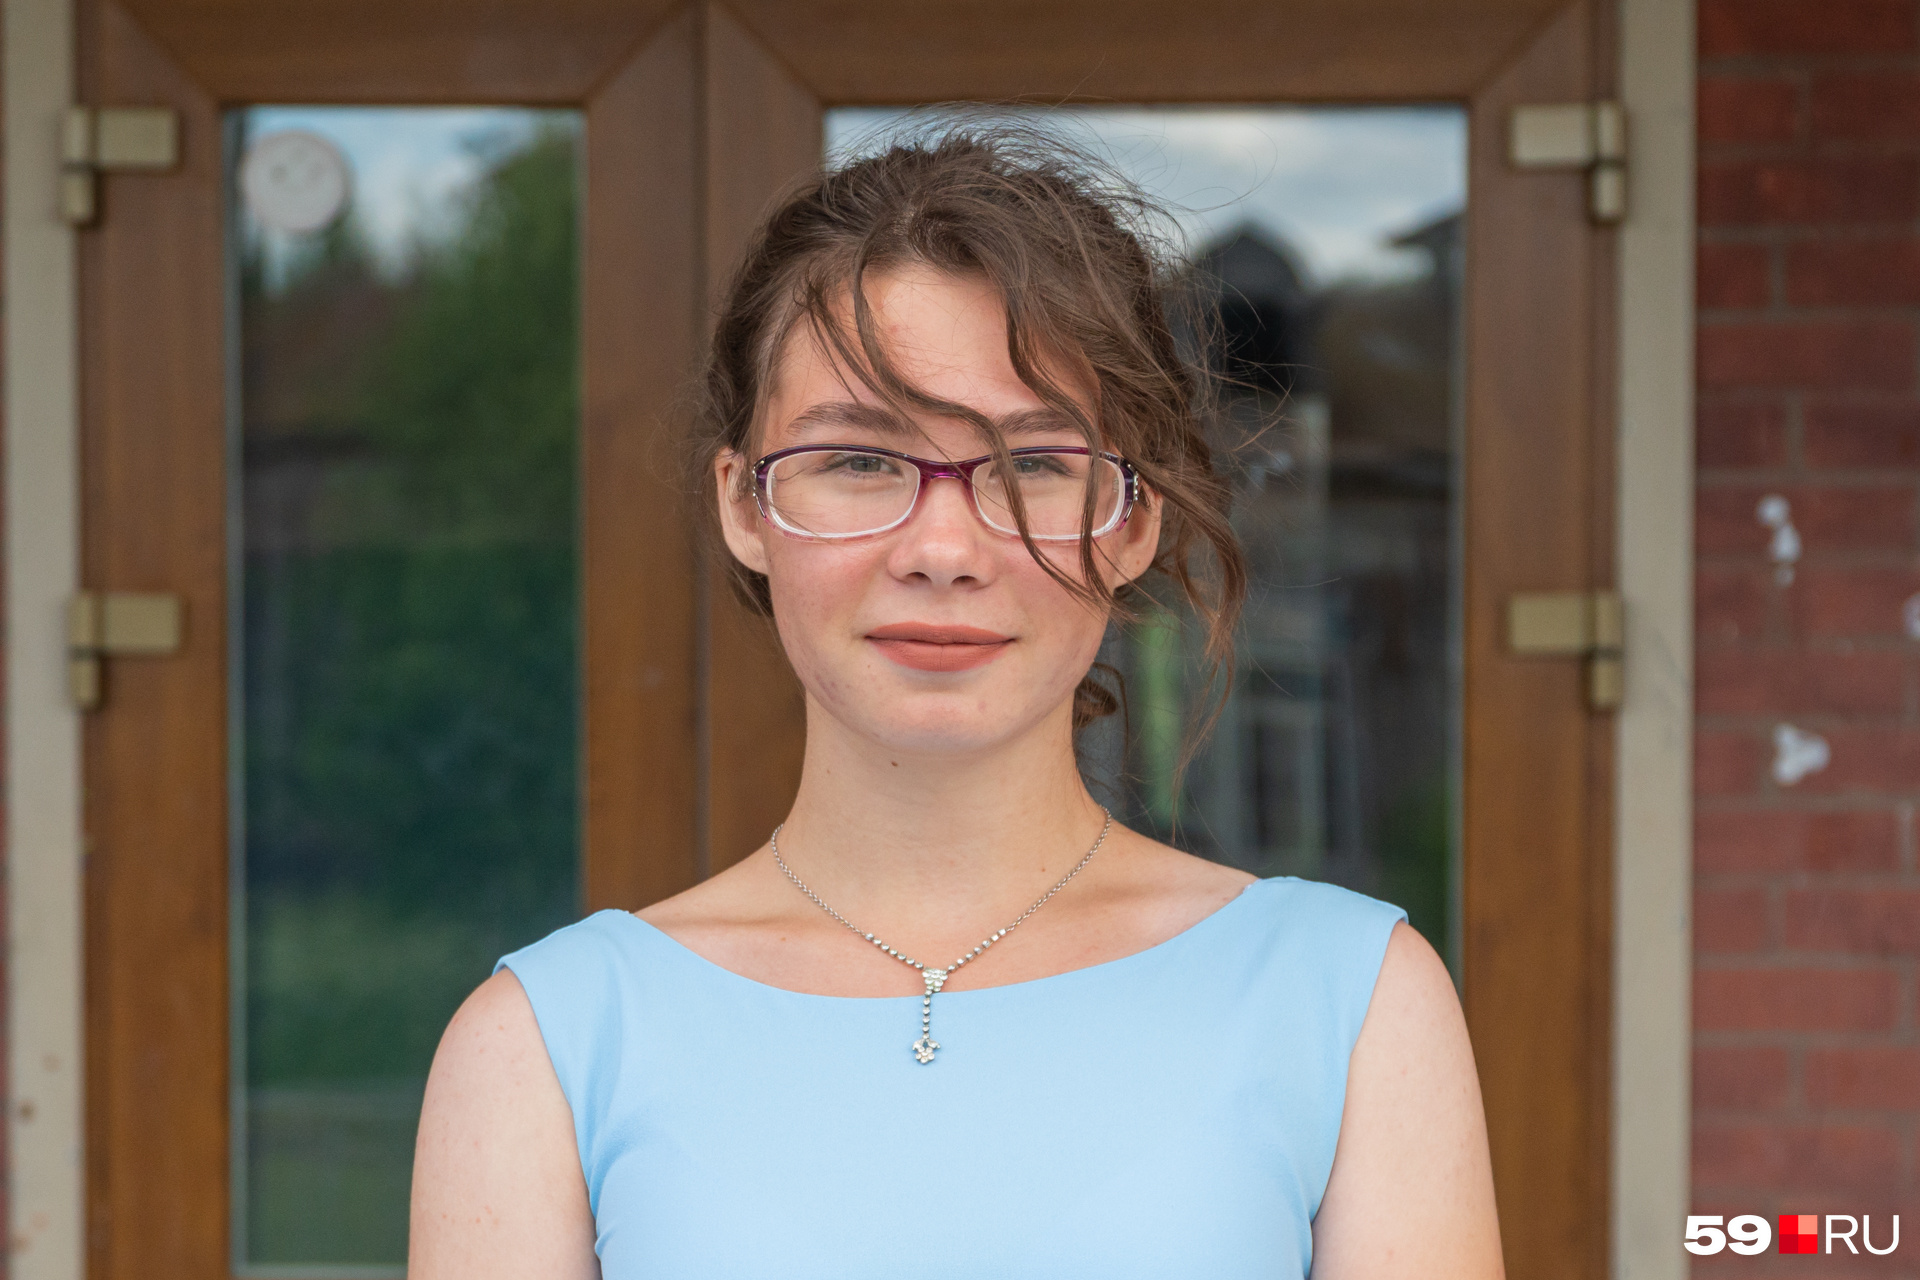 Полина Костромитинова выбирает между специальностями юриста и психолога